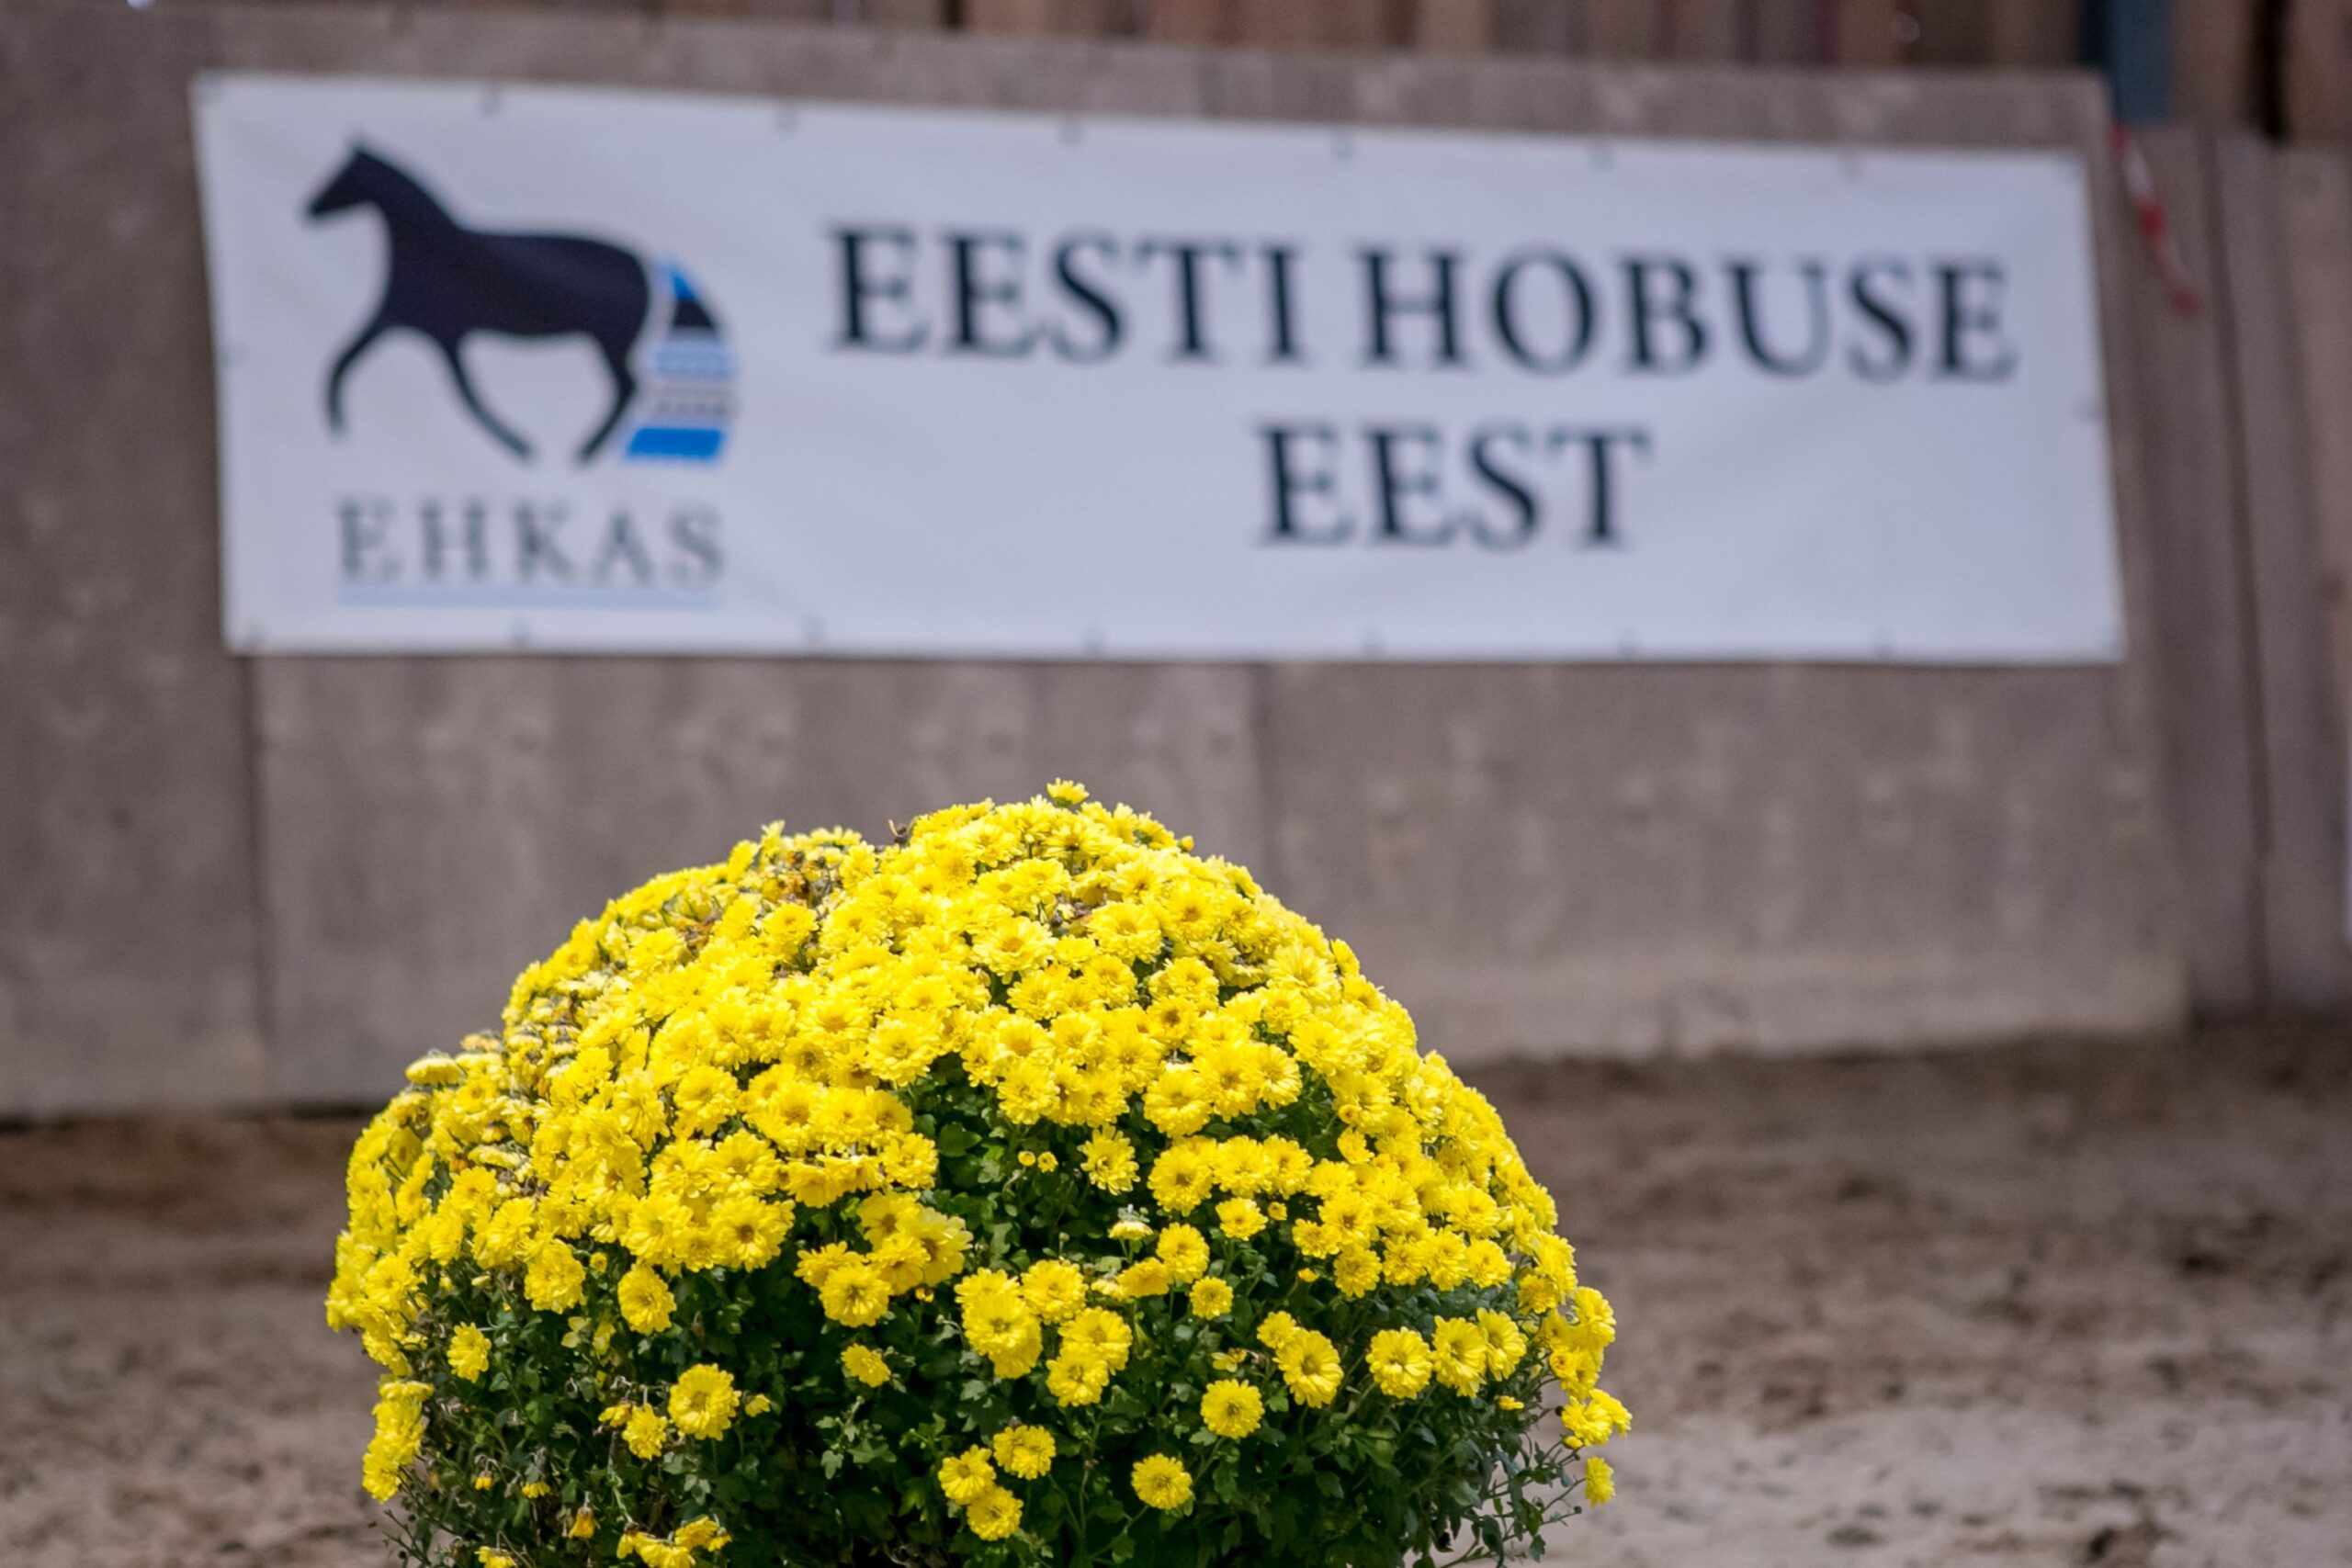 EHKAS –  Eesti hobuse eest 